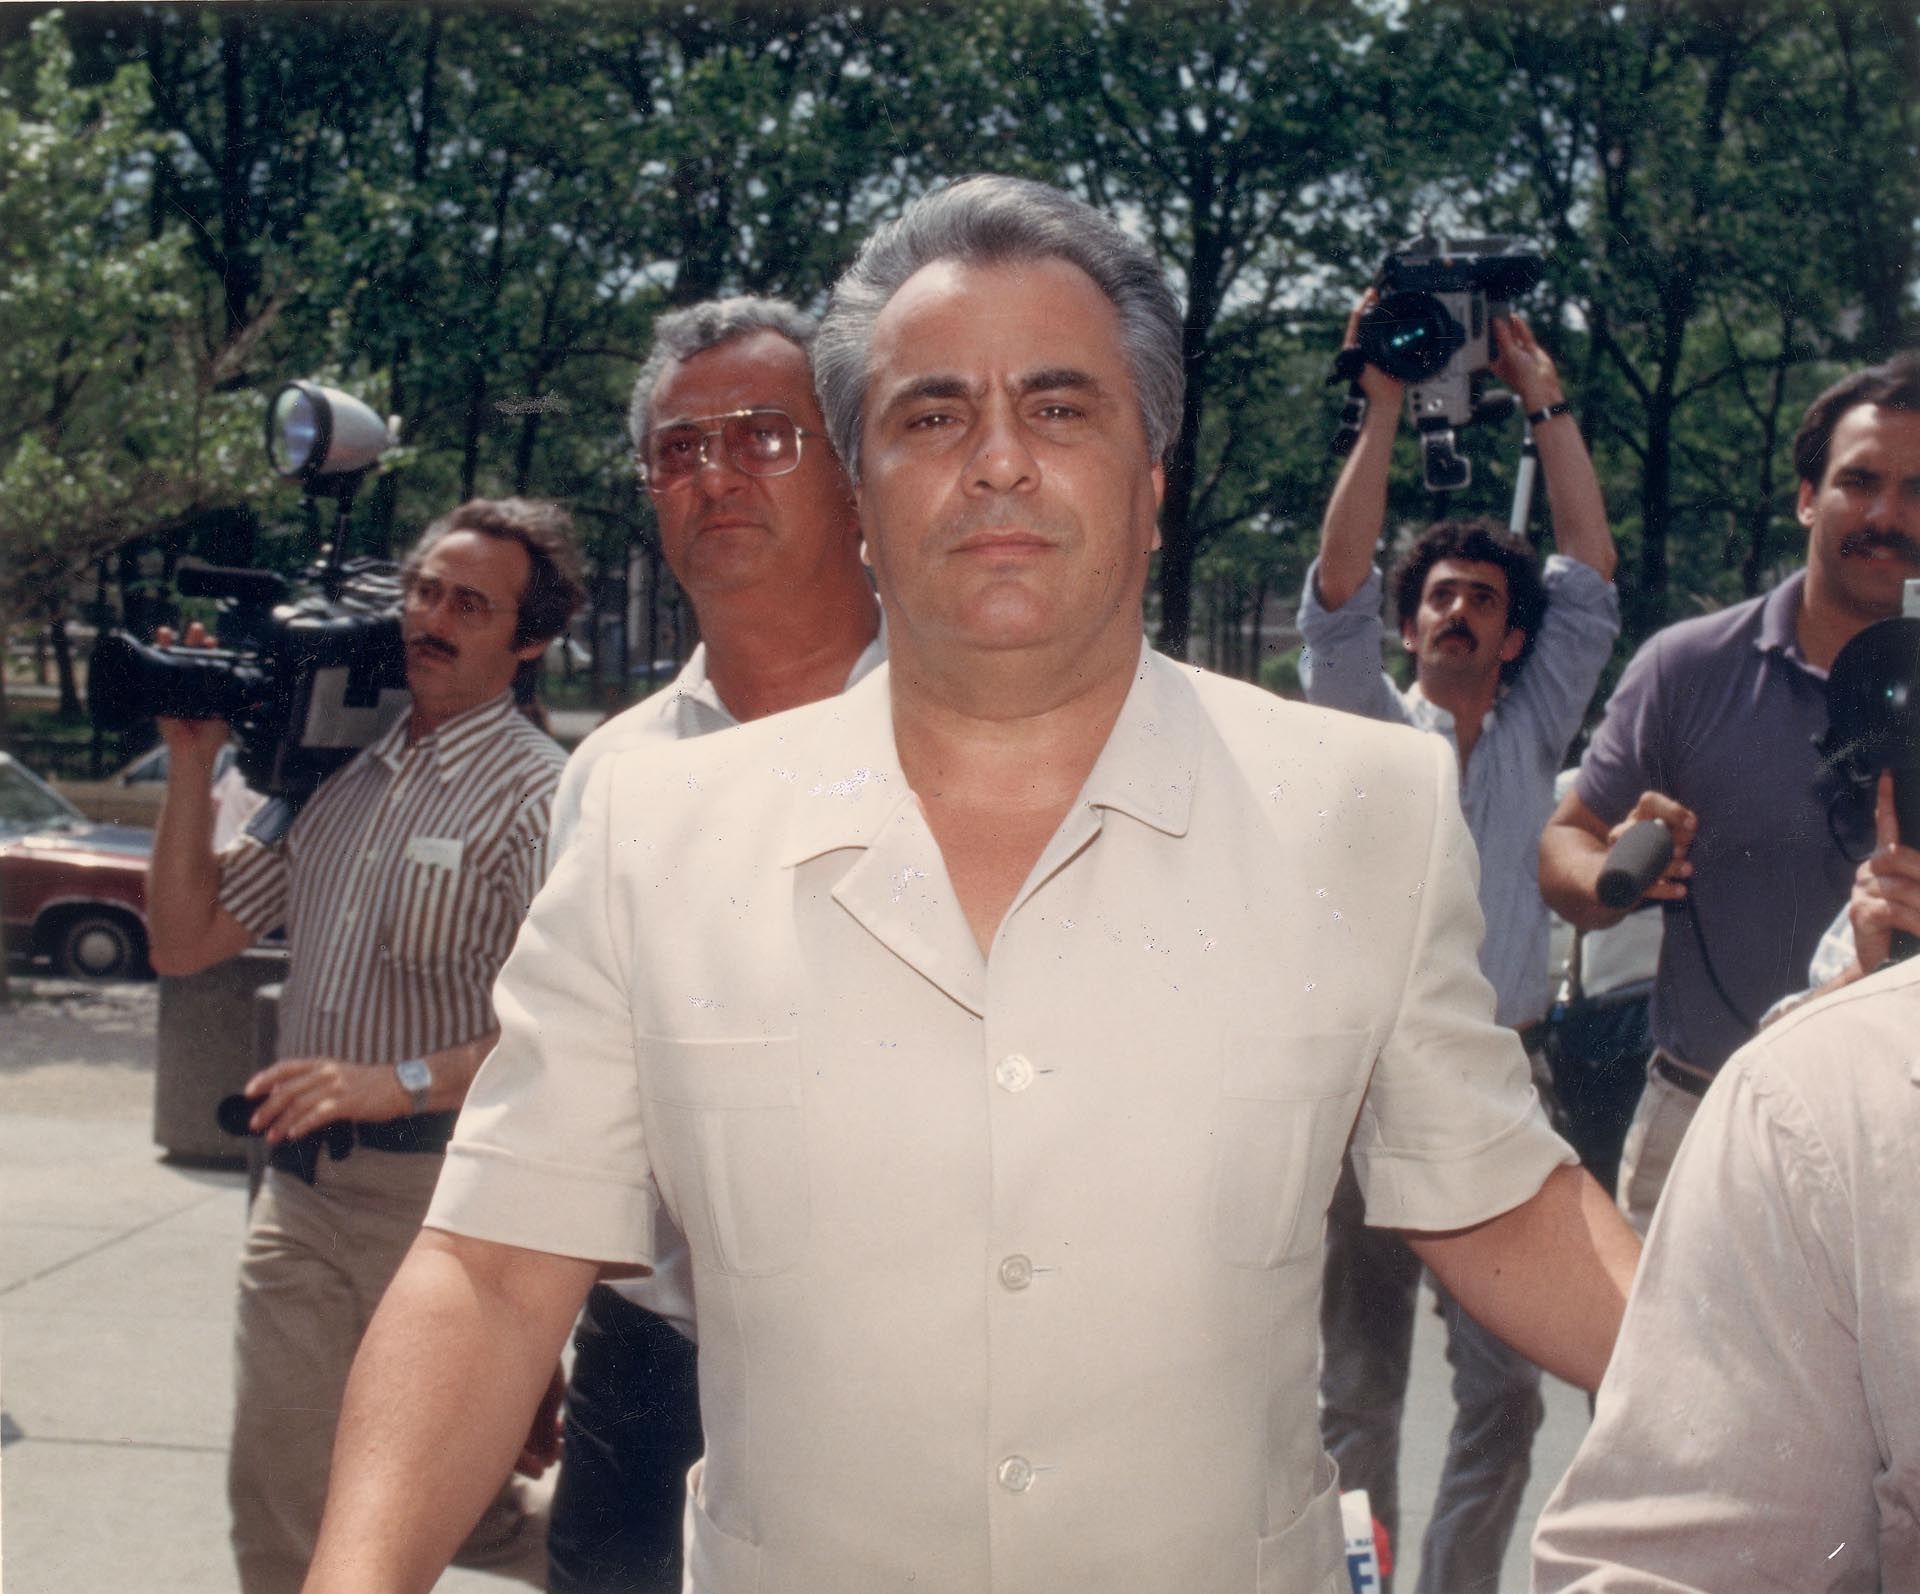 La vertiginosa vida de John Gotti, el último capo mafia de Nueva York: del ascenso en la “Cosa Nostra” hasta su muerte en prisión